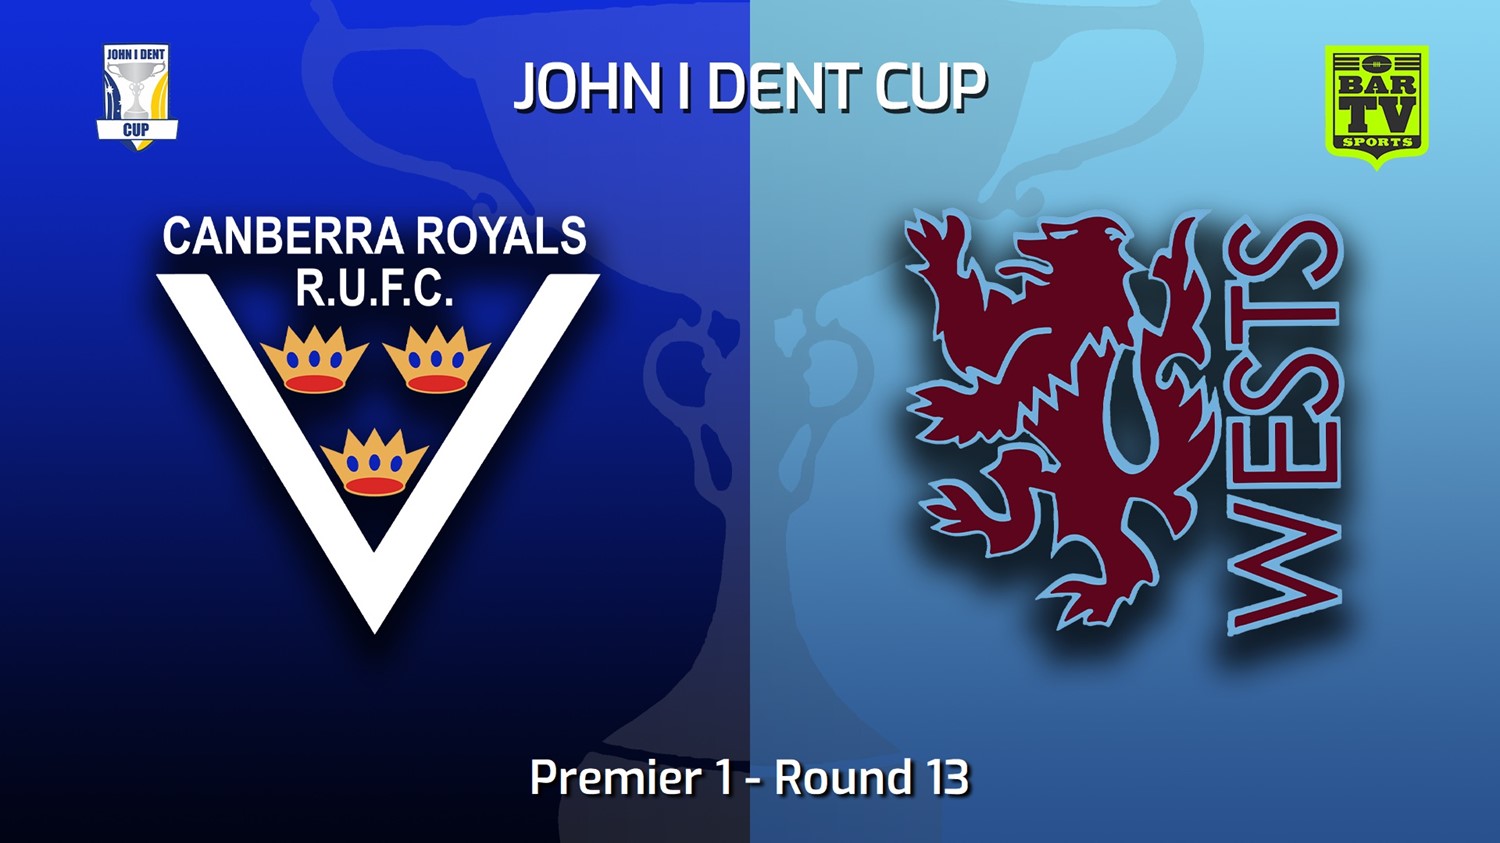 220723-John I Dent (ACT) Round 13 - Premier 1 - Canberra Royals v Wests Lions Slate Image